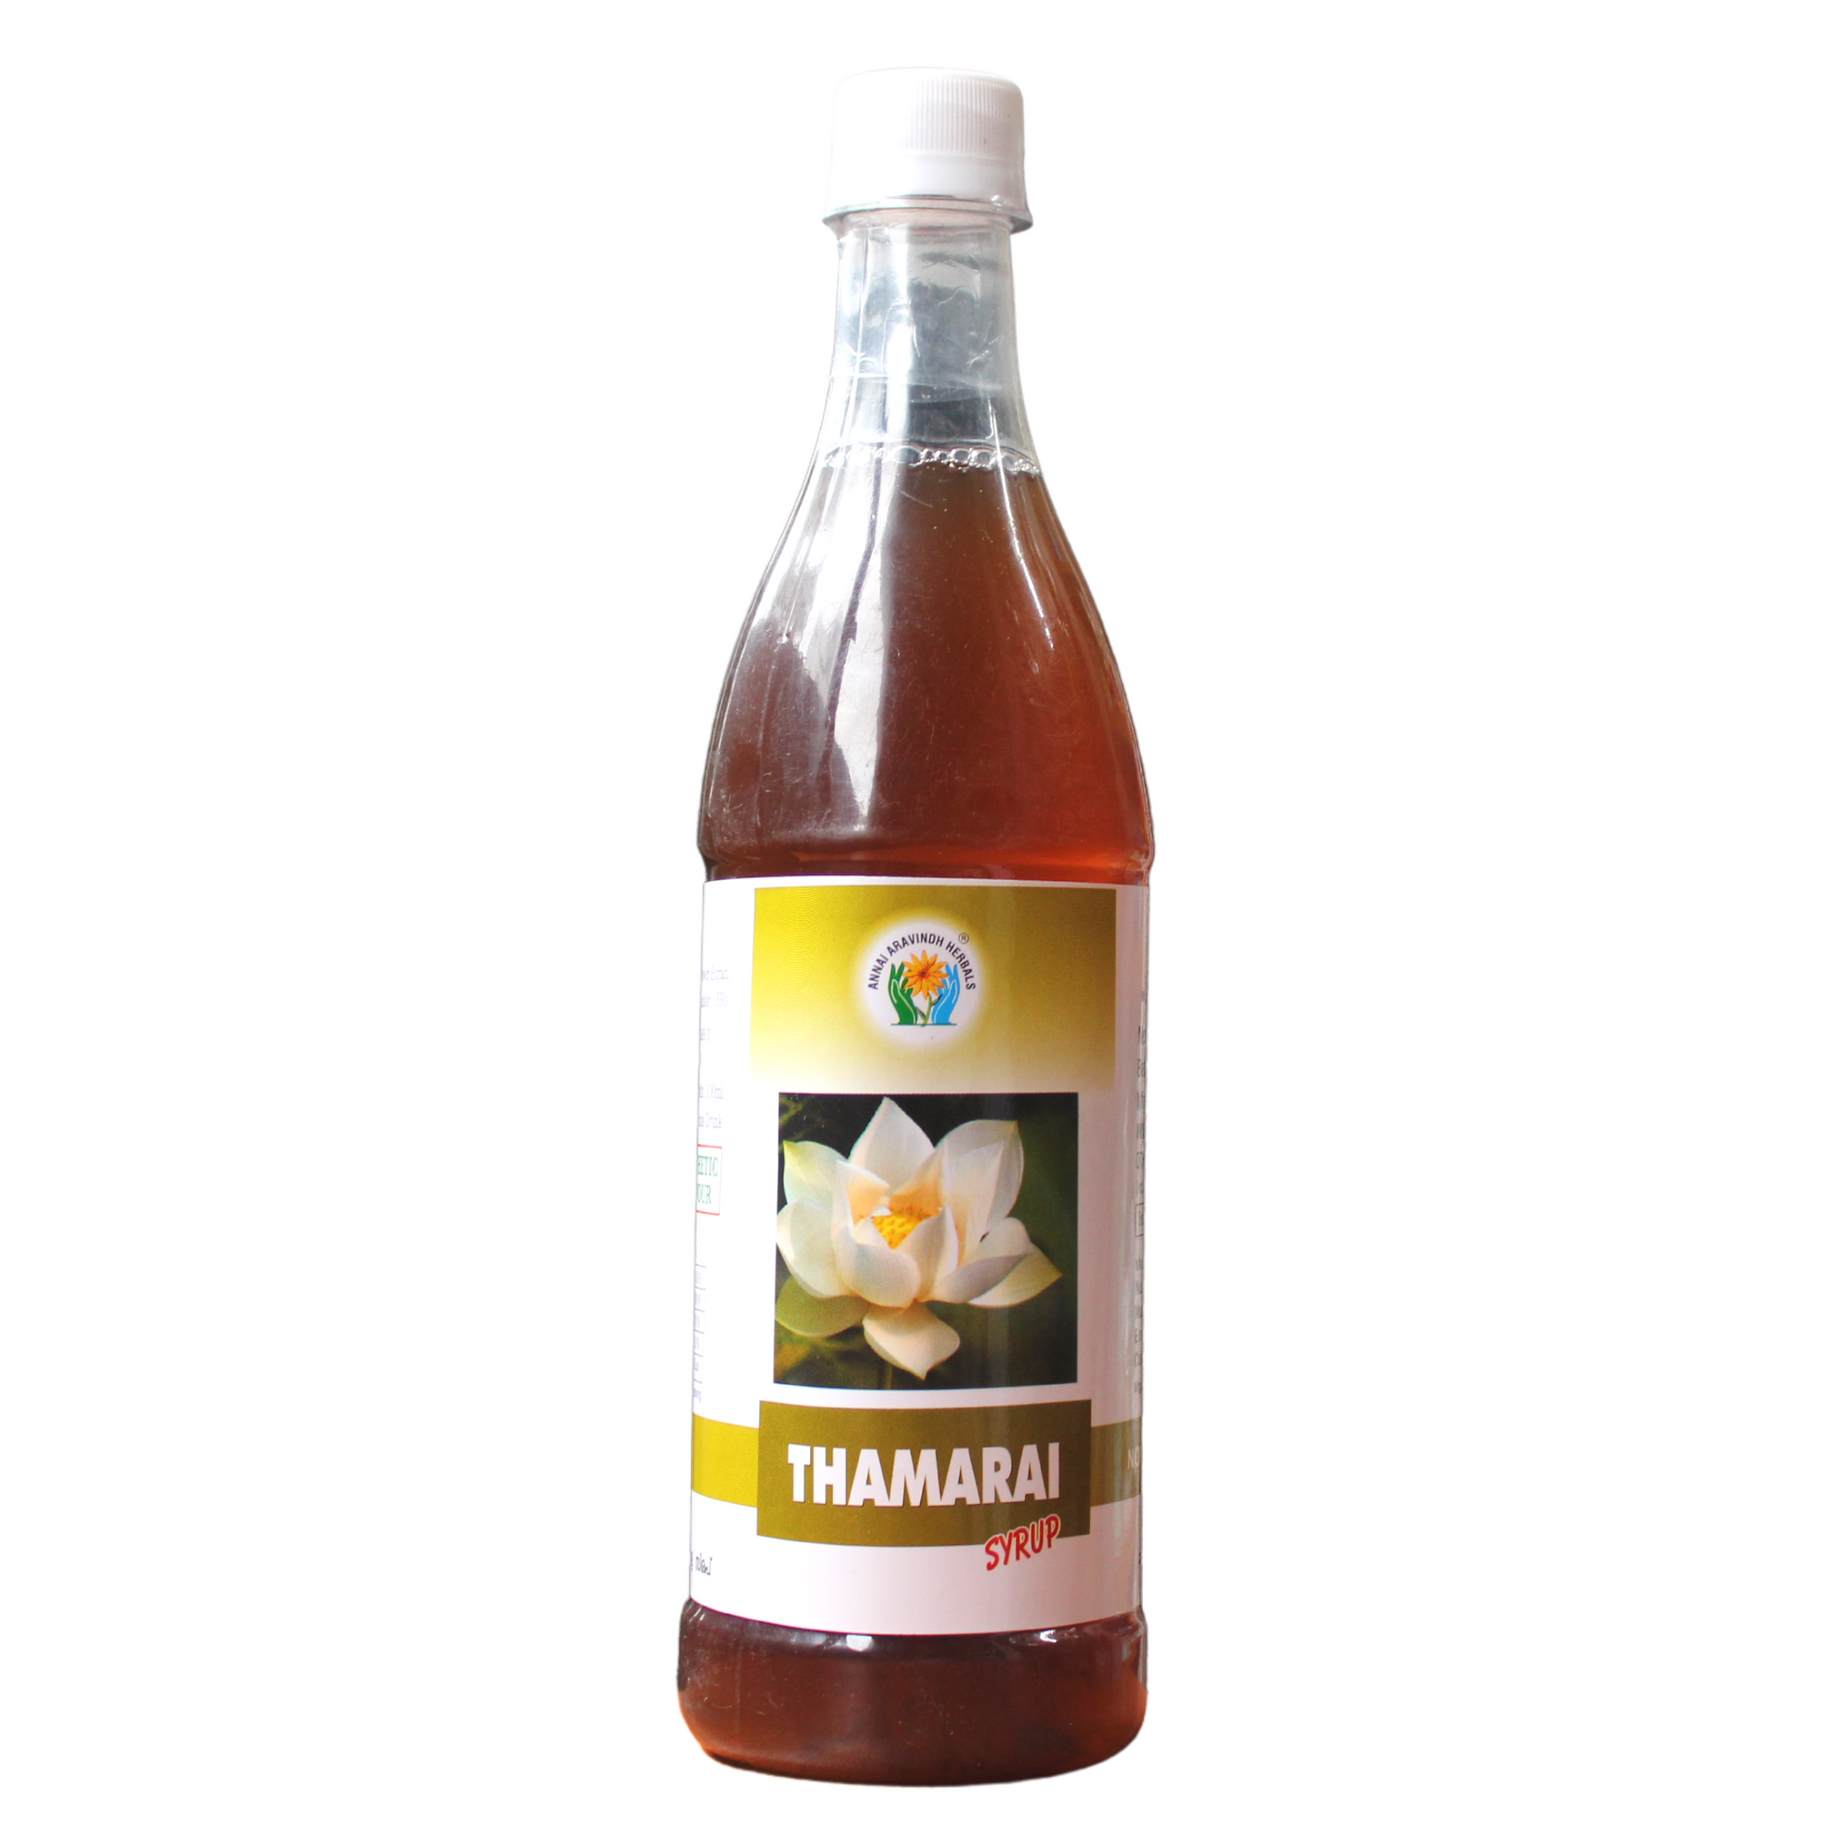 Shop Annai Aravindh Thamarai Syrup - 690ml at price 140.00 from Annai Aravindh Online - Ayush Care